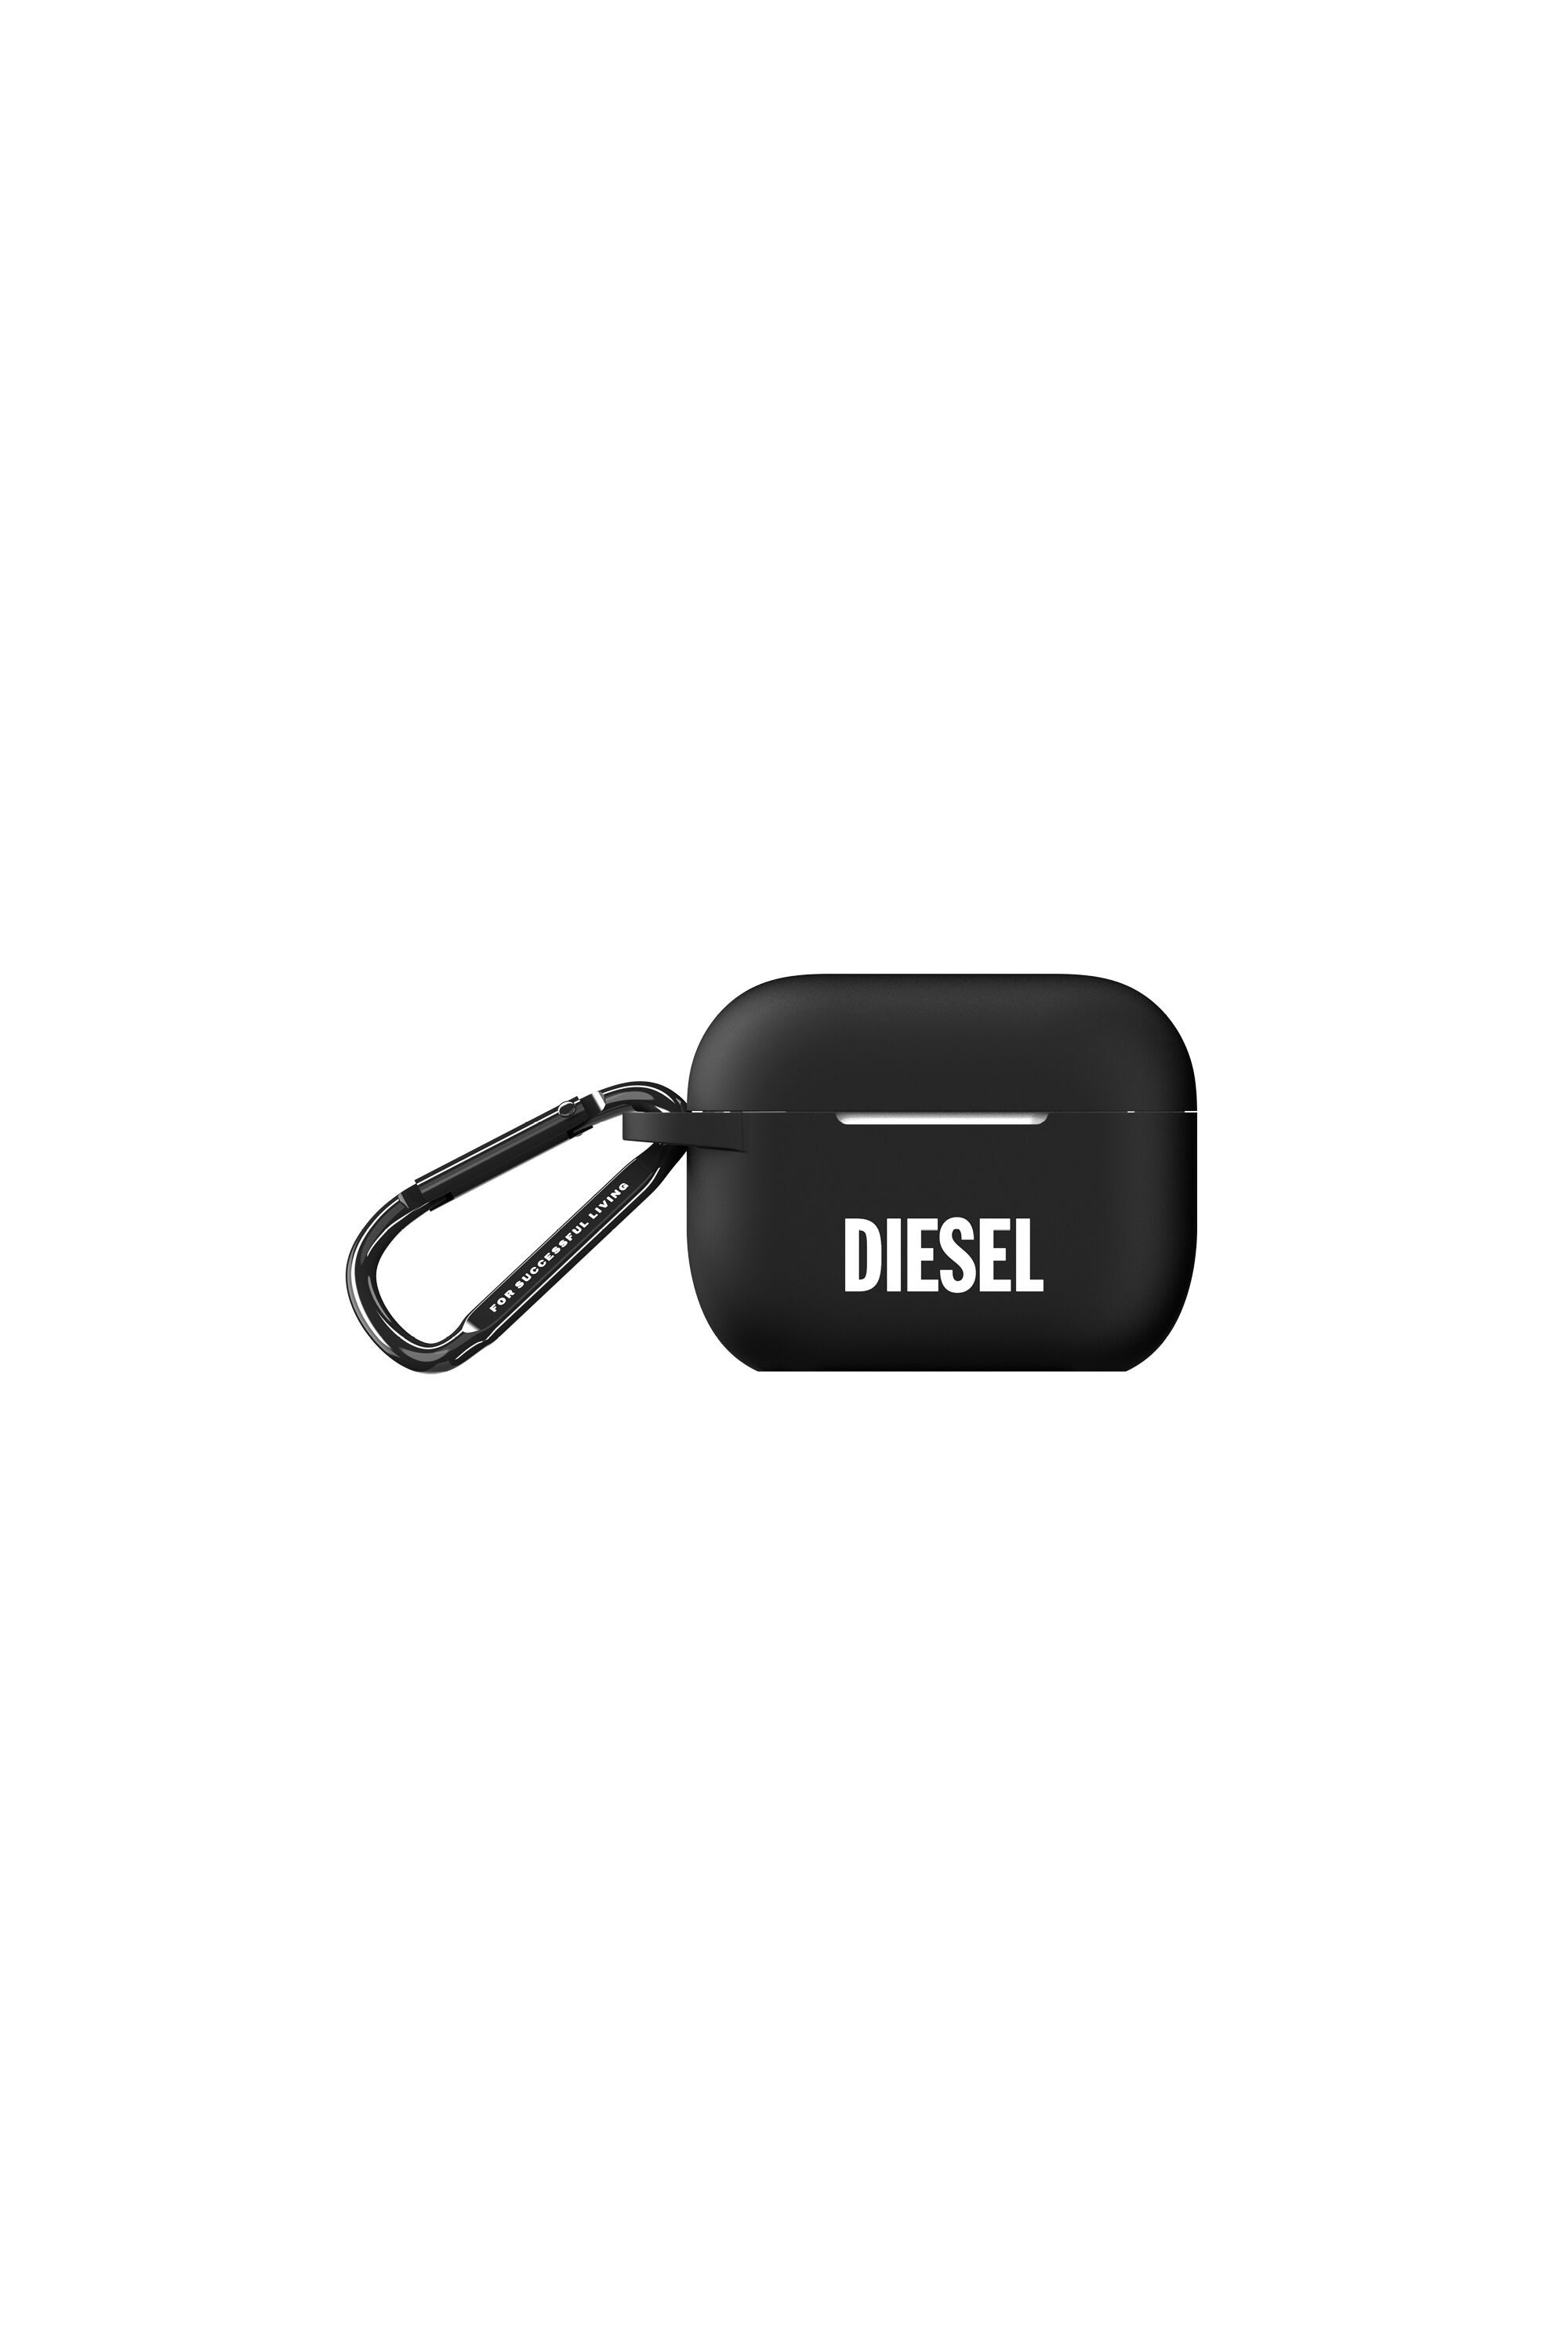 Diesel - 45835 AIRPOD CASE, Black - Image 1